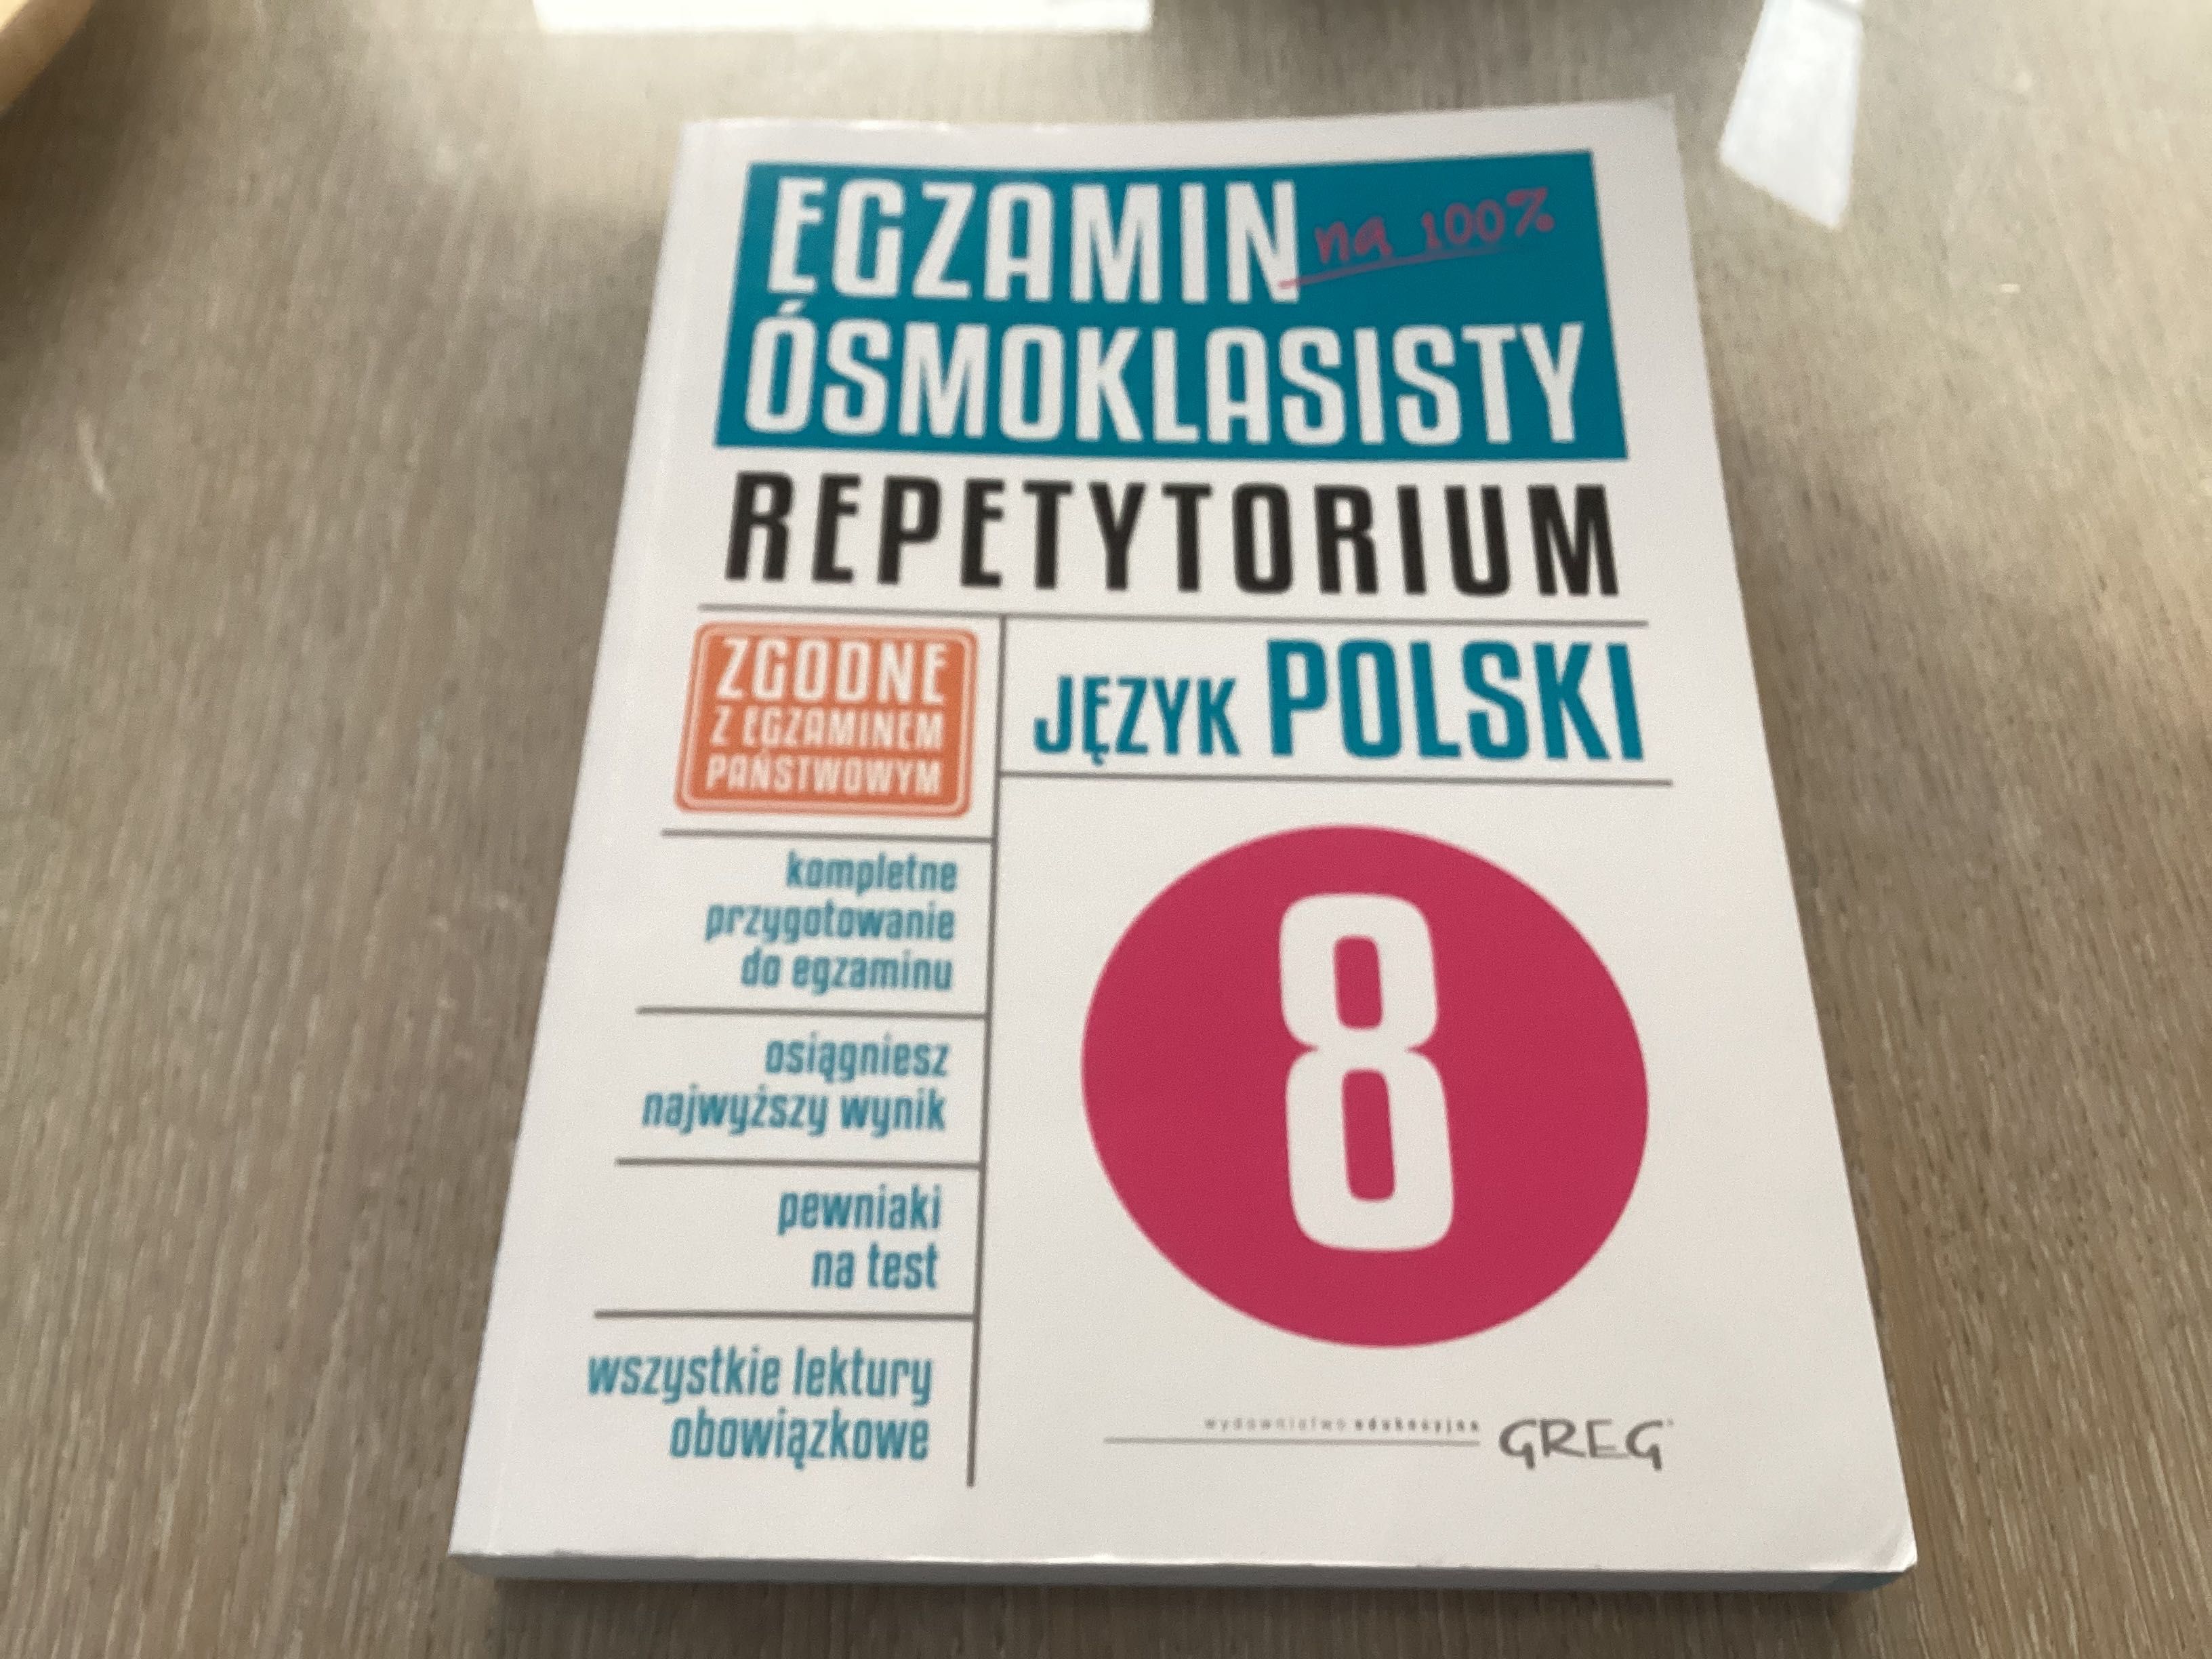 Egzamin ośmioklasisty /repetytorium/j.polski/greg